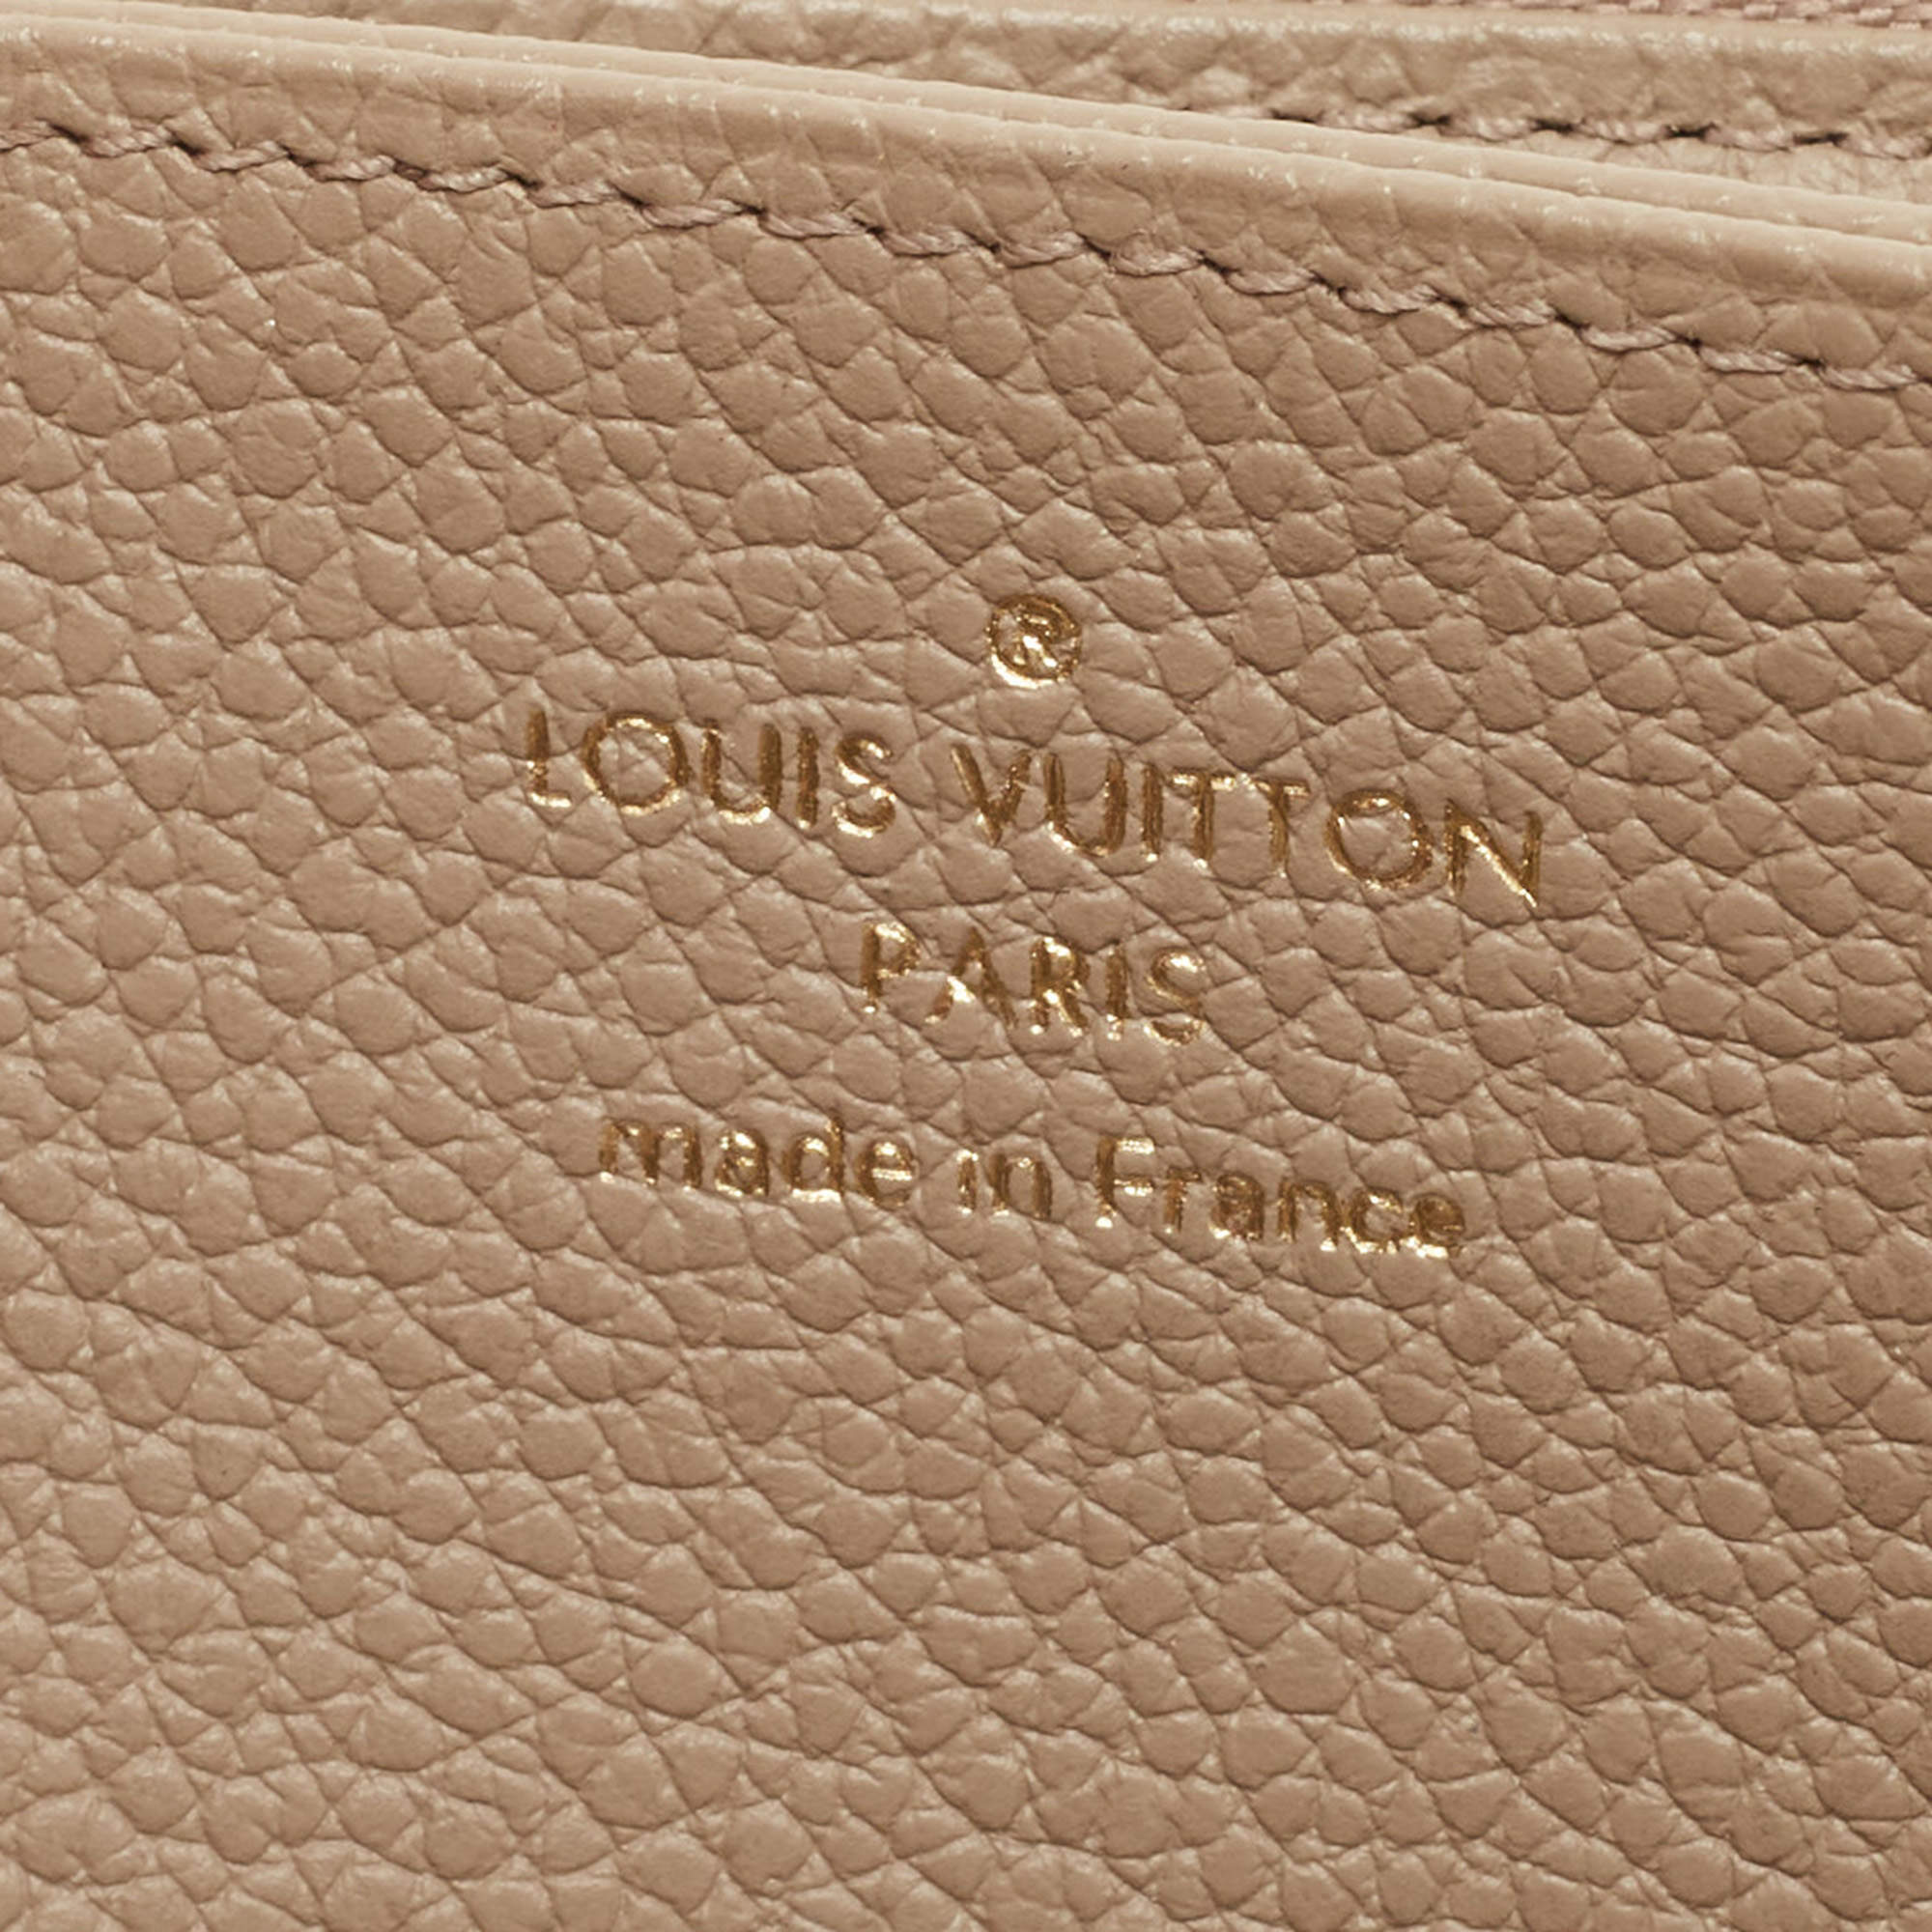 Louis Vuitton Tourterelle/Creme Monogram Empreinte Leather Zippy Wallet  Louis Vuitton